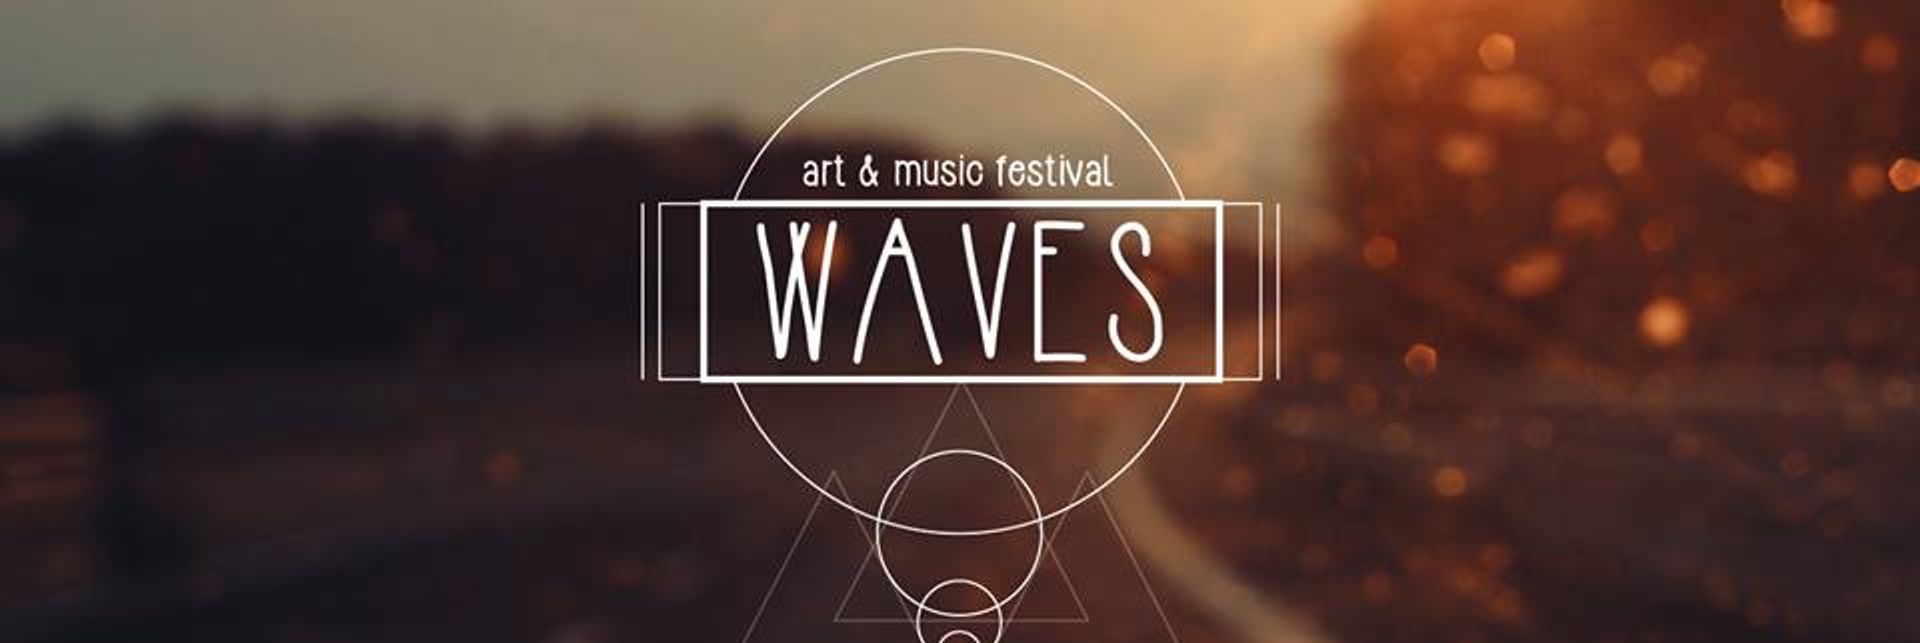 WAVES festival